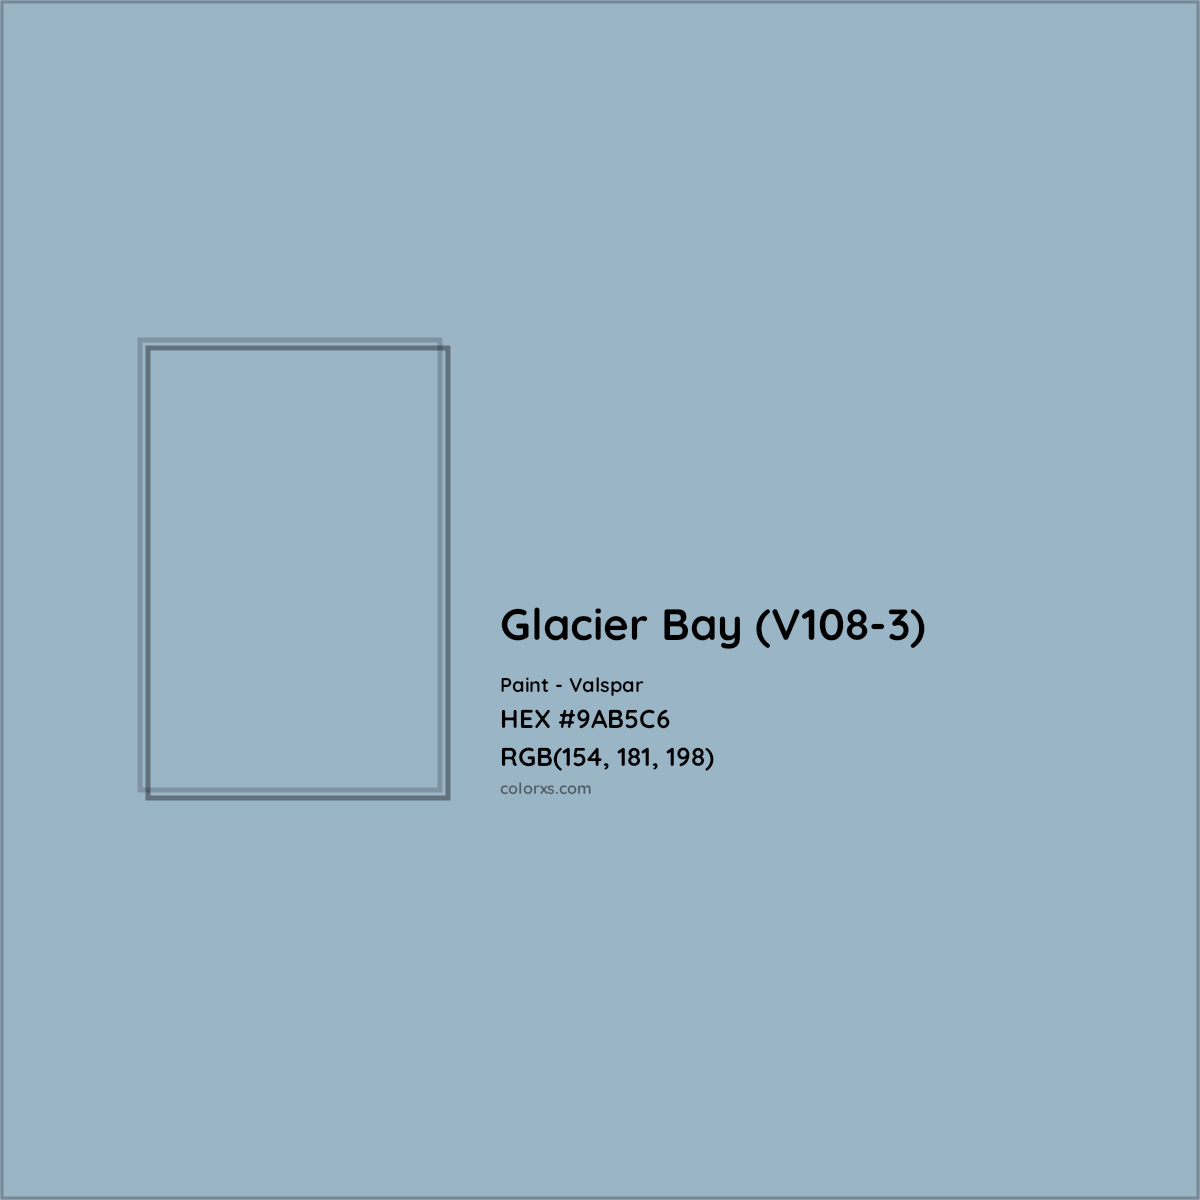 HEX #9AB5C6 Glacier Bay (V108-3) Paint Valspar - Color Code